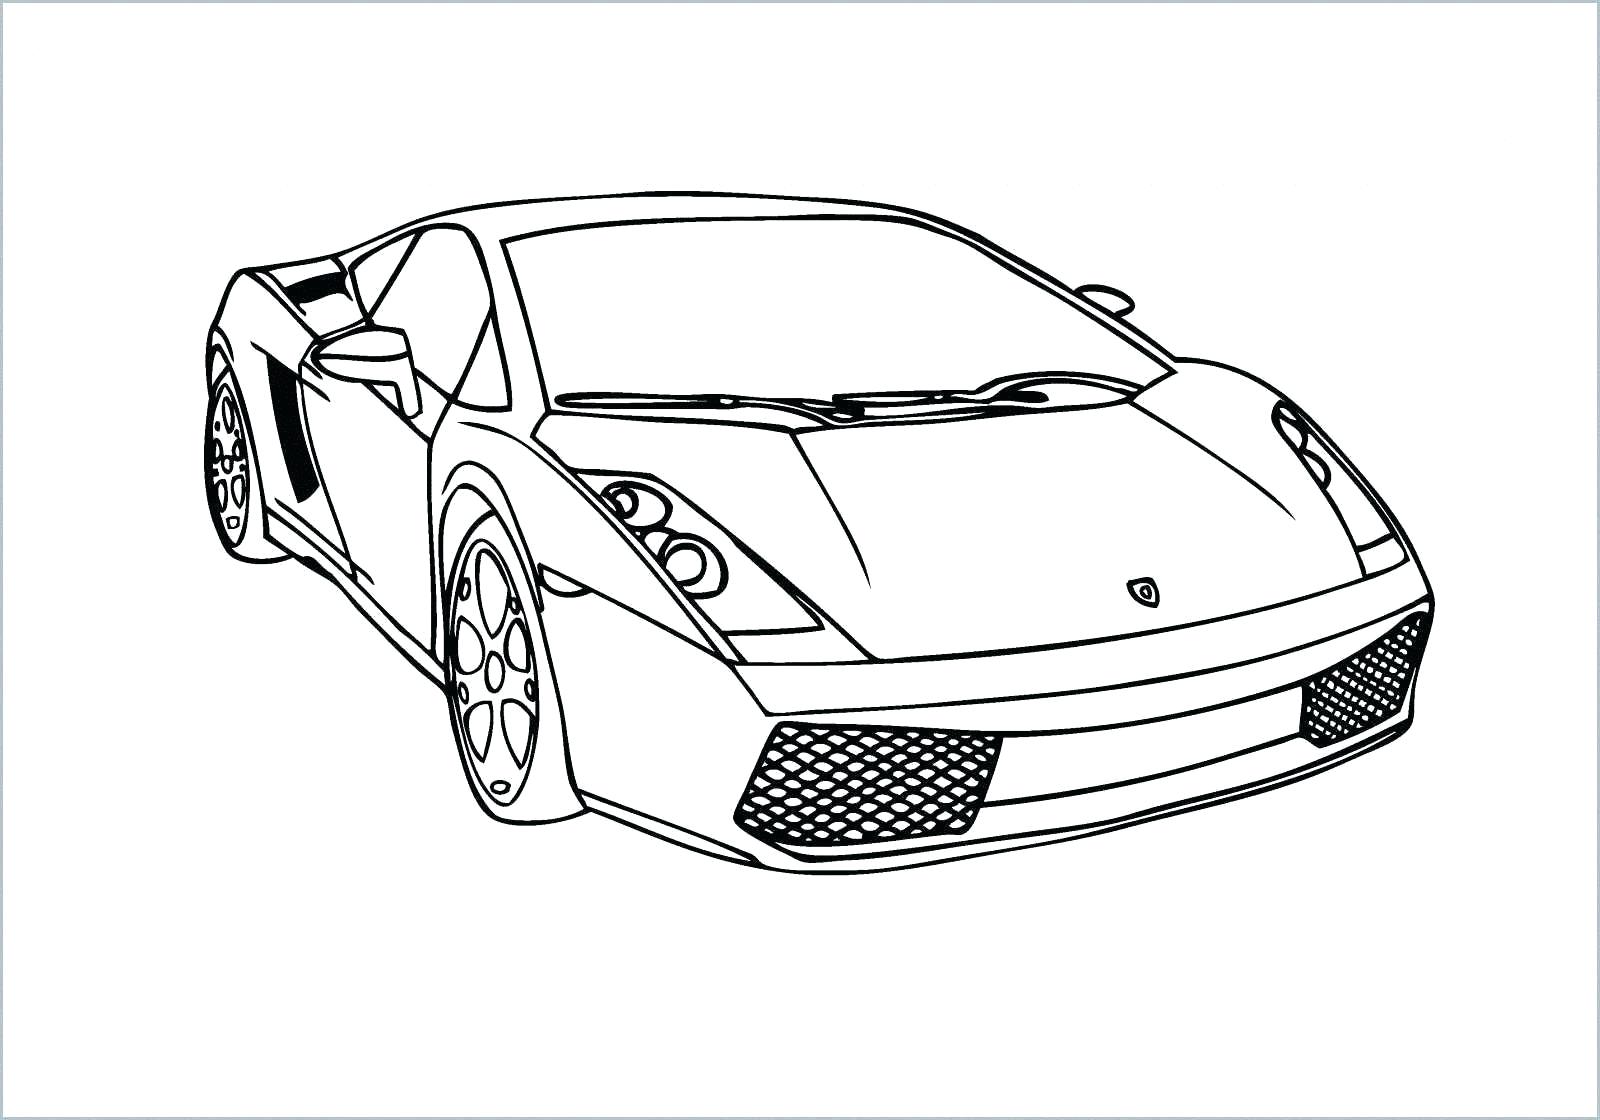 Nếu bạn là fan của các siêu xe, thì hãy thưởng thức những hình ảnh về siêu xe Lamborghini đầy ấn tượng và sang trọng. Chắc chắn bạn sẽ không thể rời mắt khi xem những mẫu xe này.